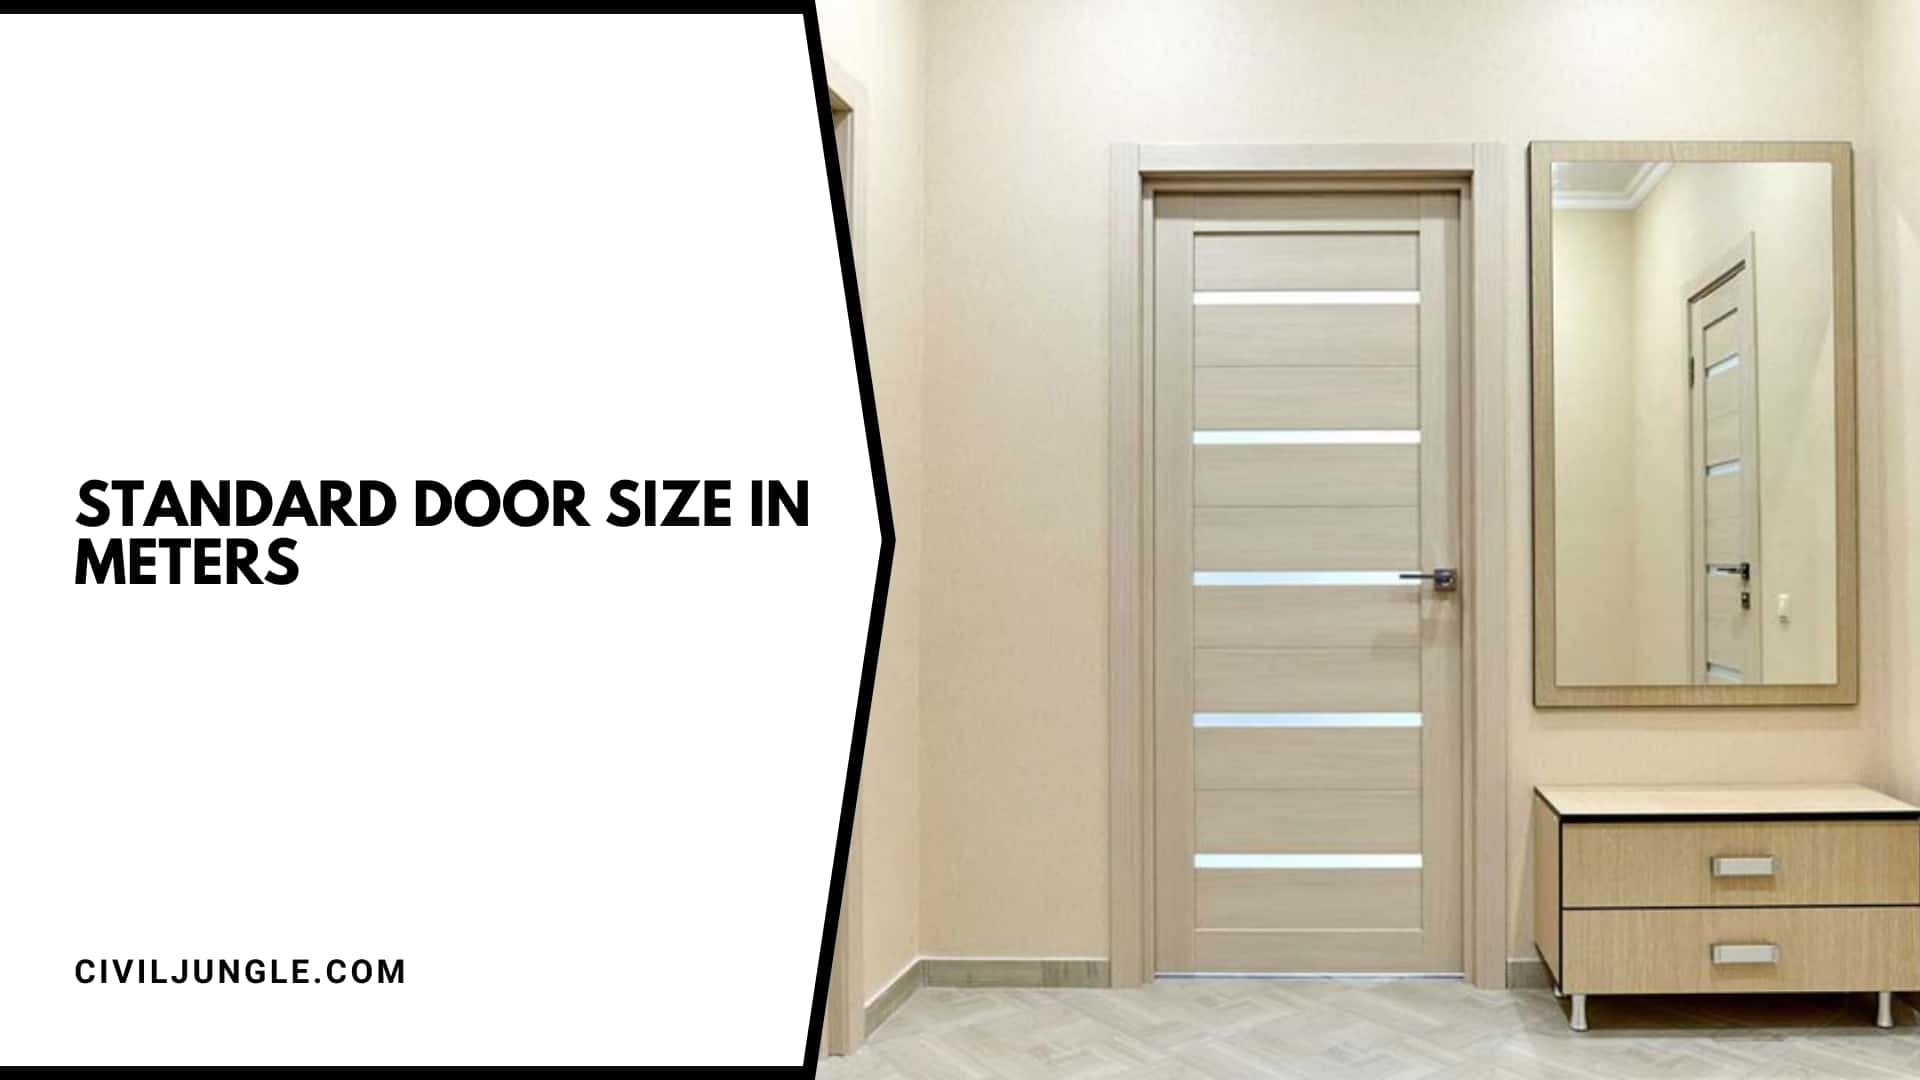 Standard Door Size in Meters